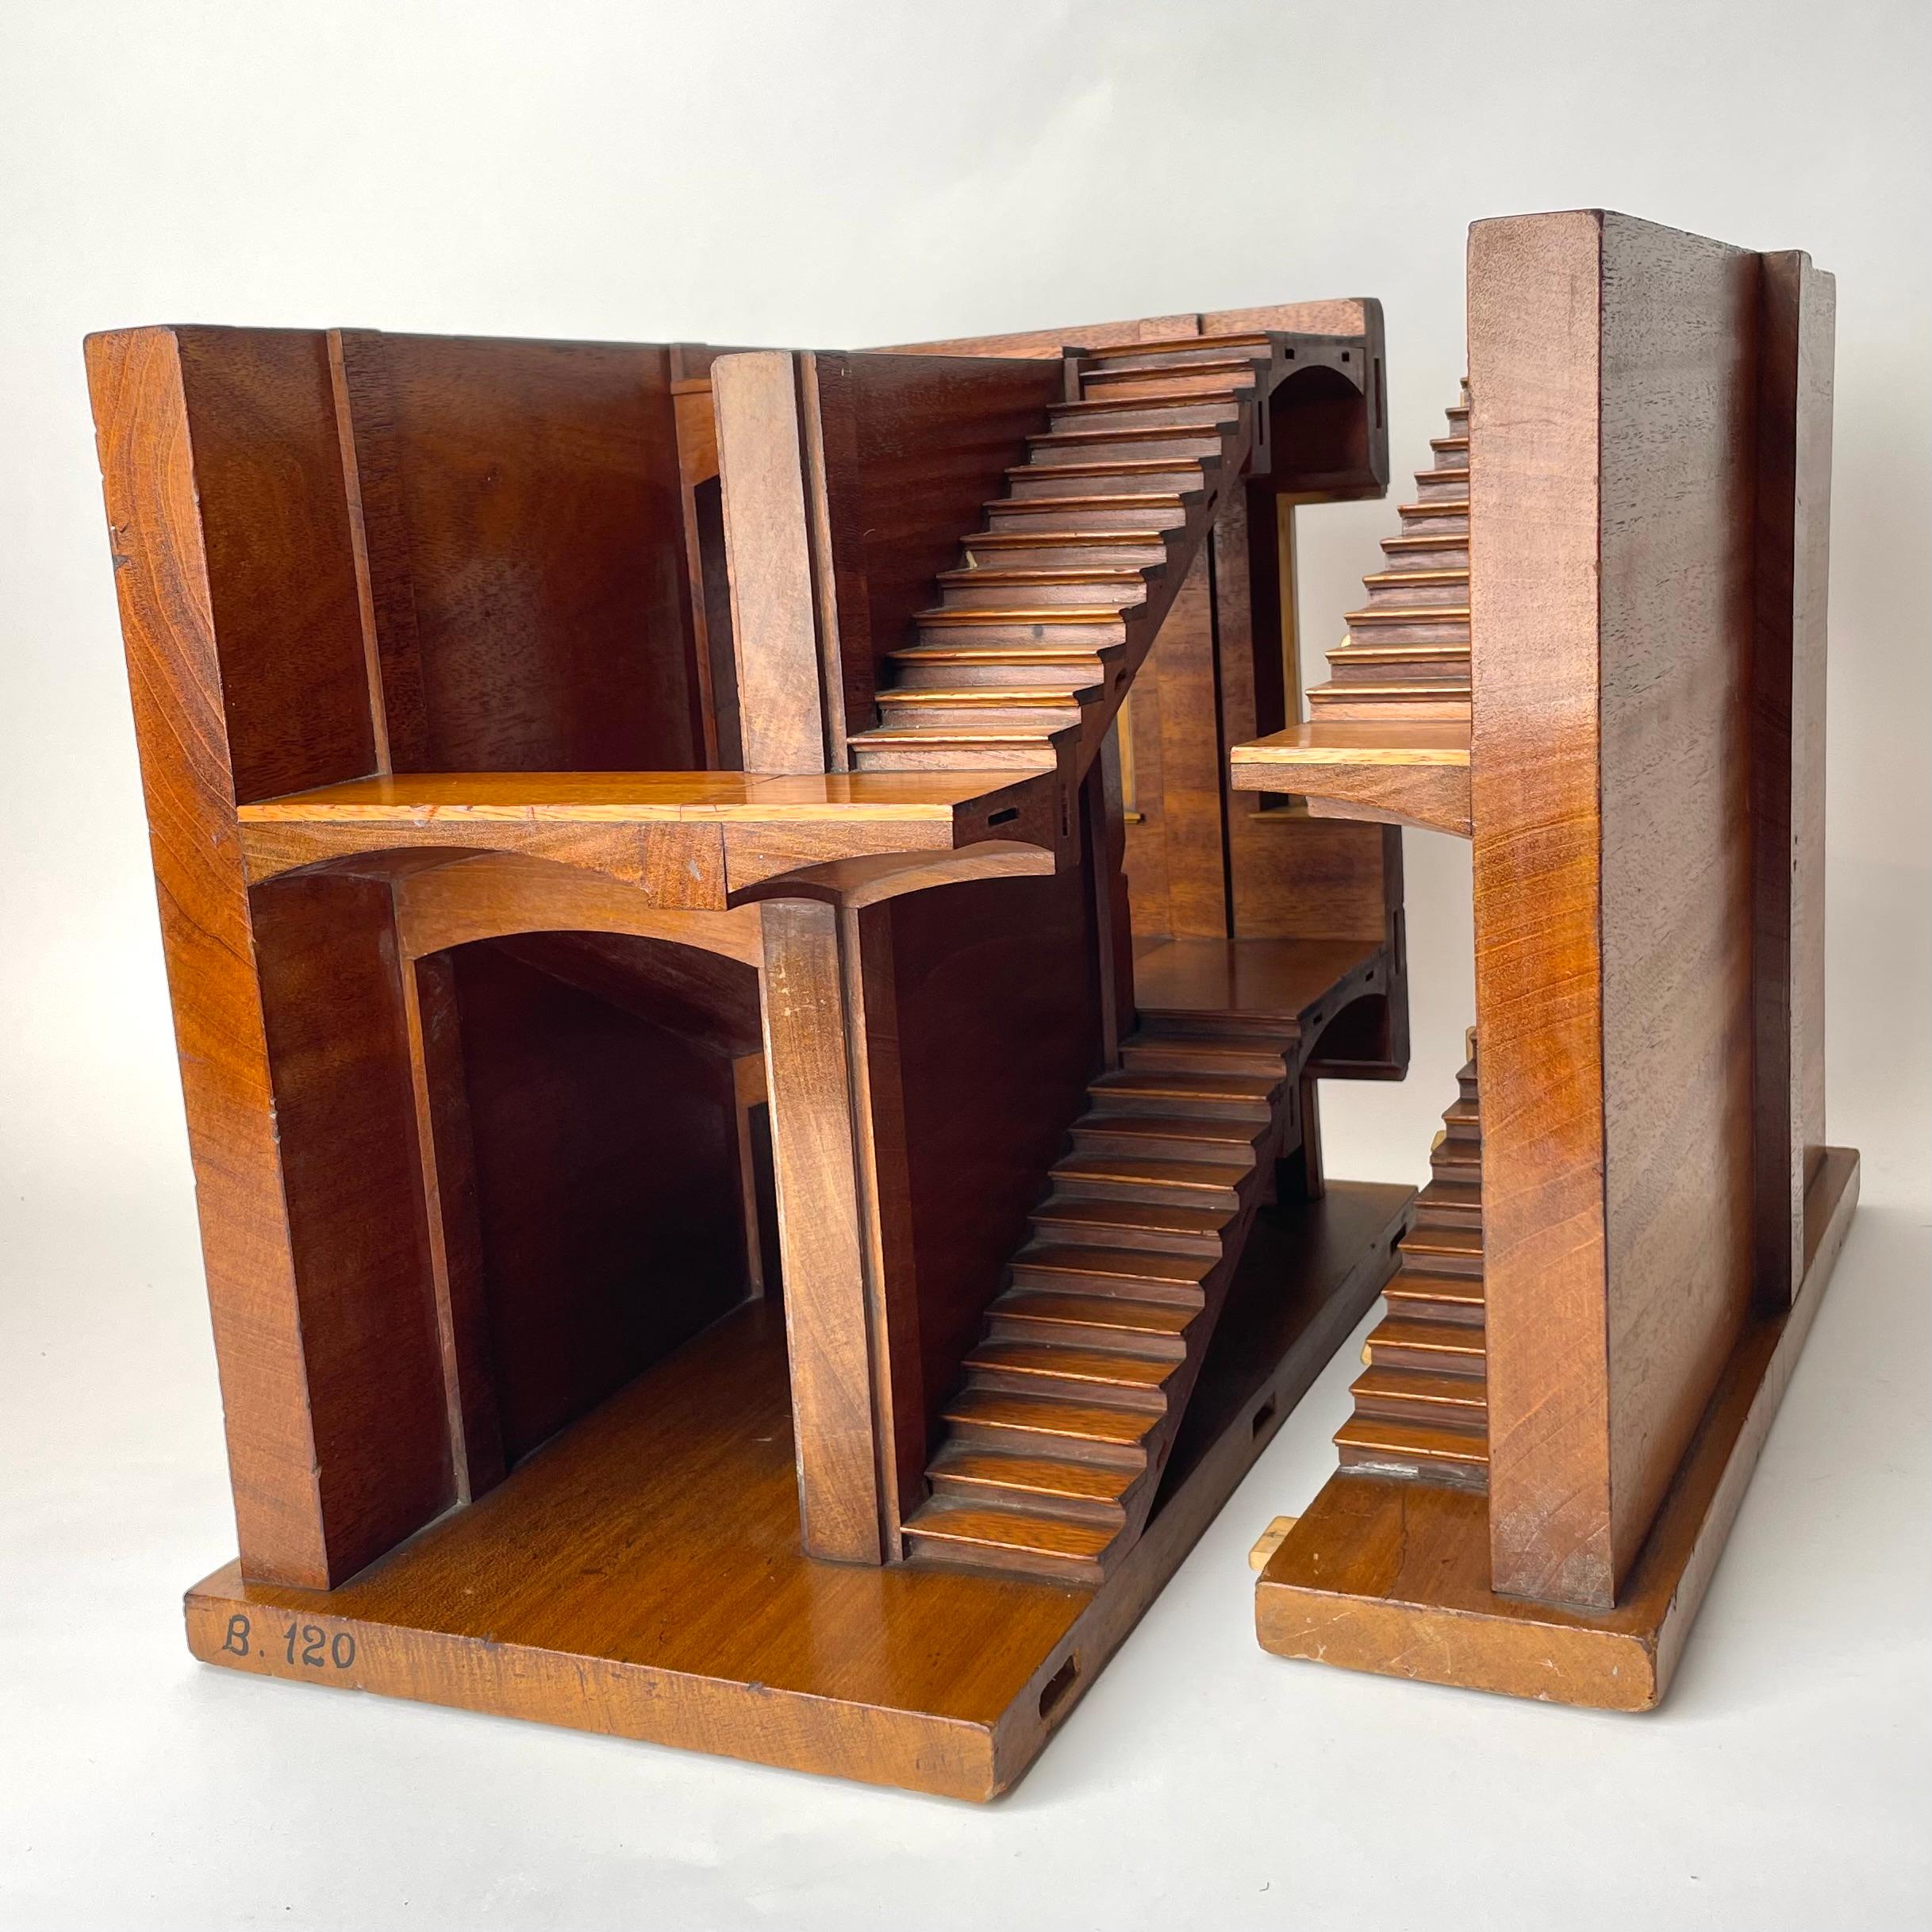 Modèle architectural d'escalier en acajou, fin du 19e/début du 20e siècle en Angleterre. Peut-être à des fins éducatives ou pour des concours d'architecture.

Modèle de section d'escalier pour l'architecture en acajou (Swietania Mahagoni de la fin